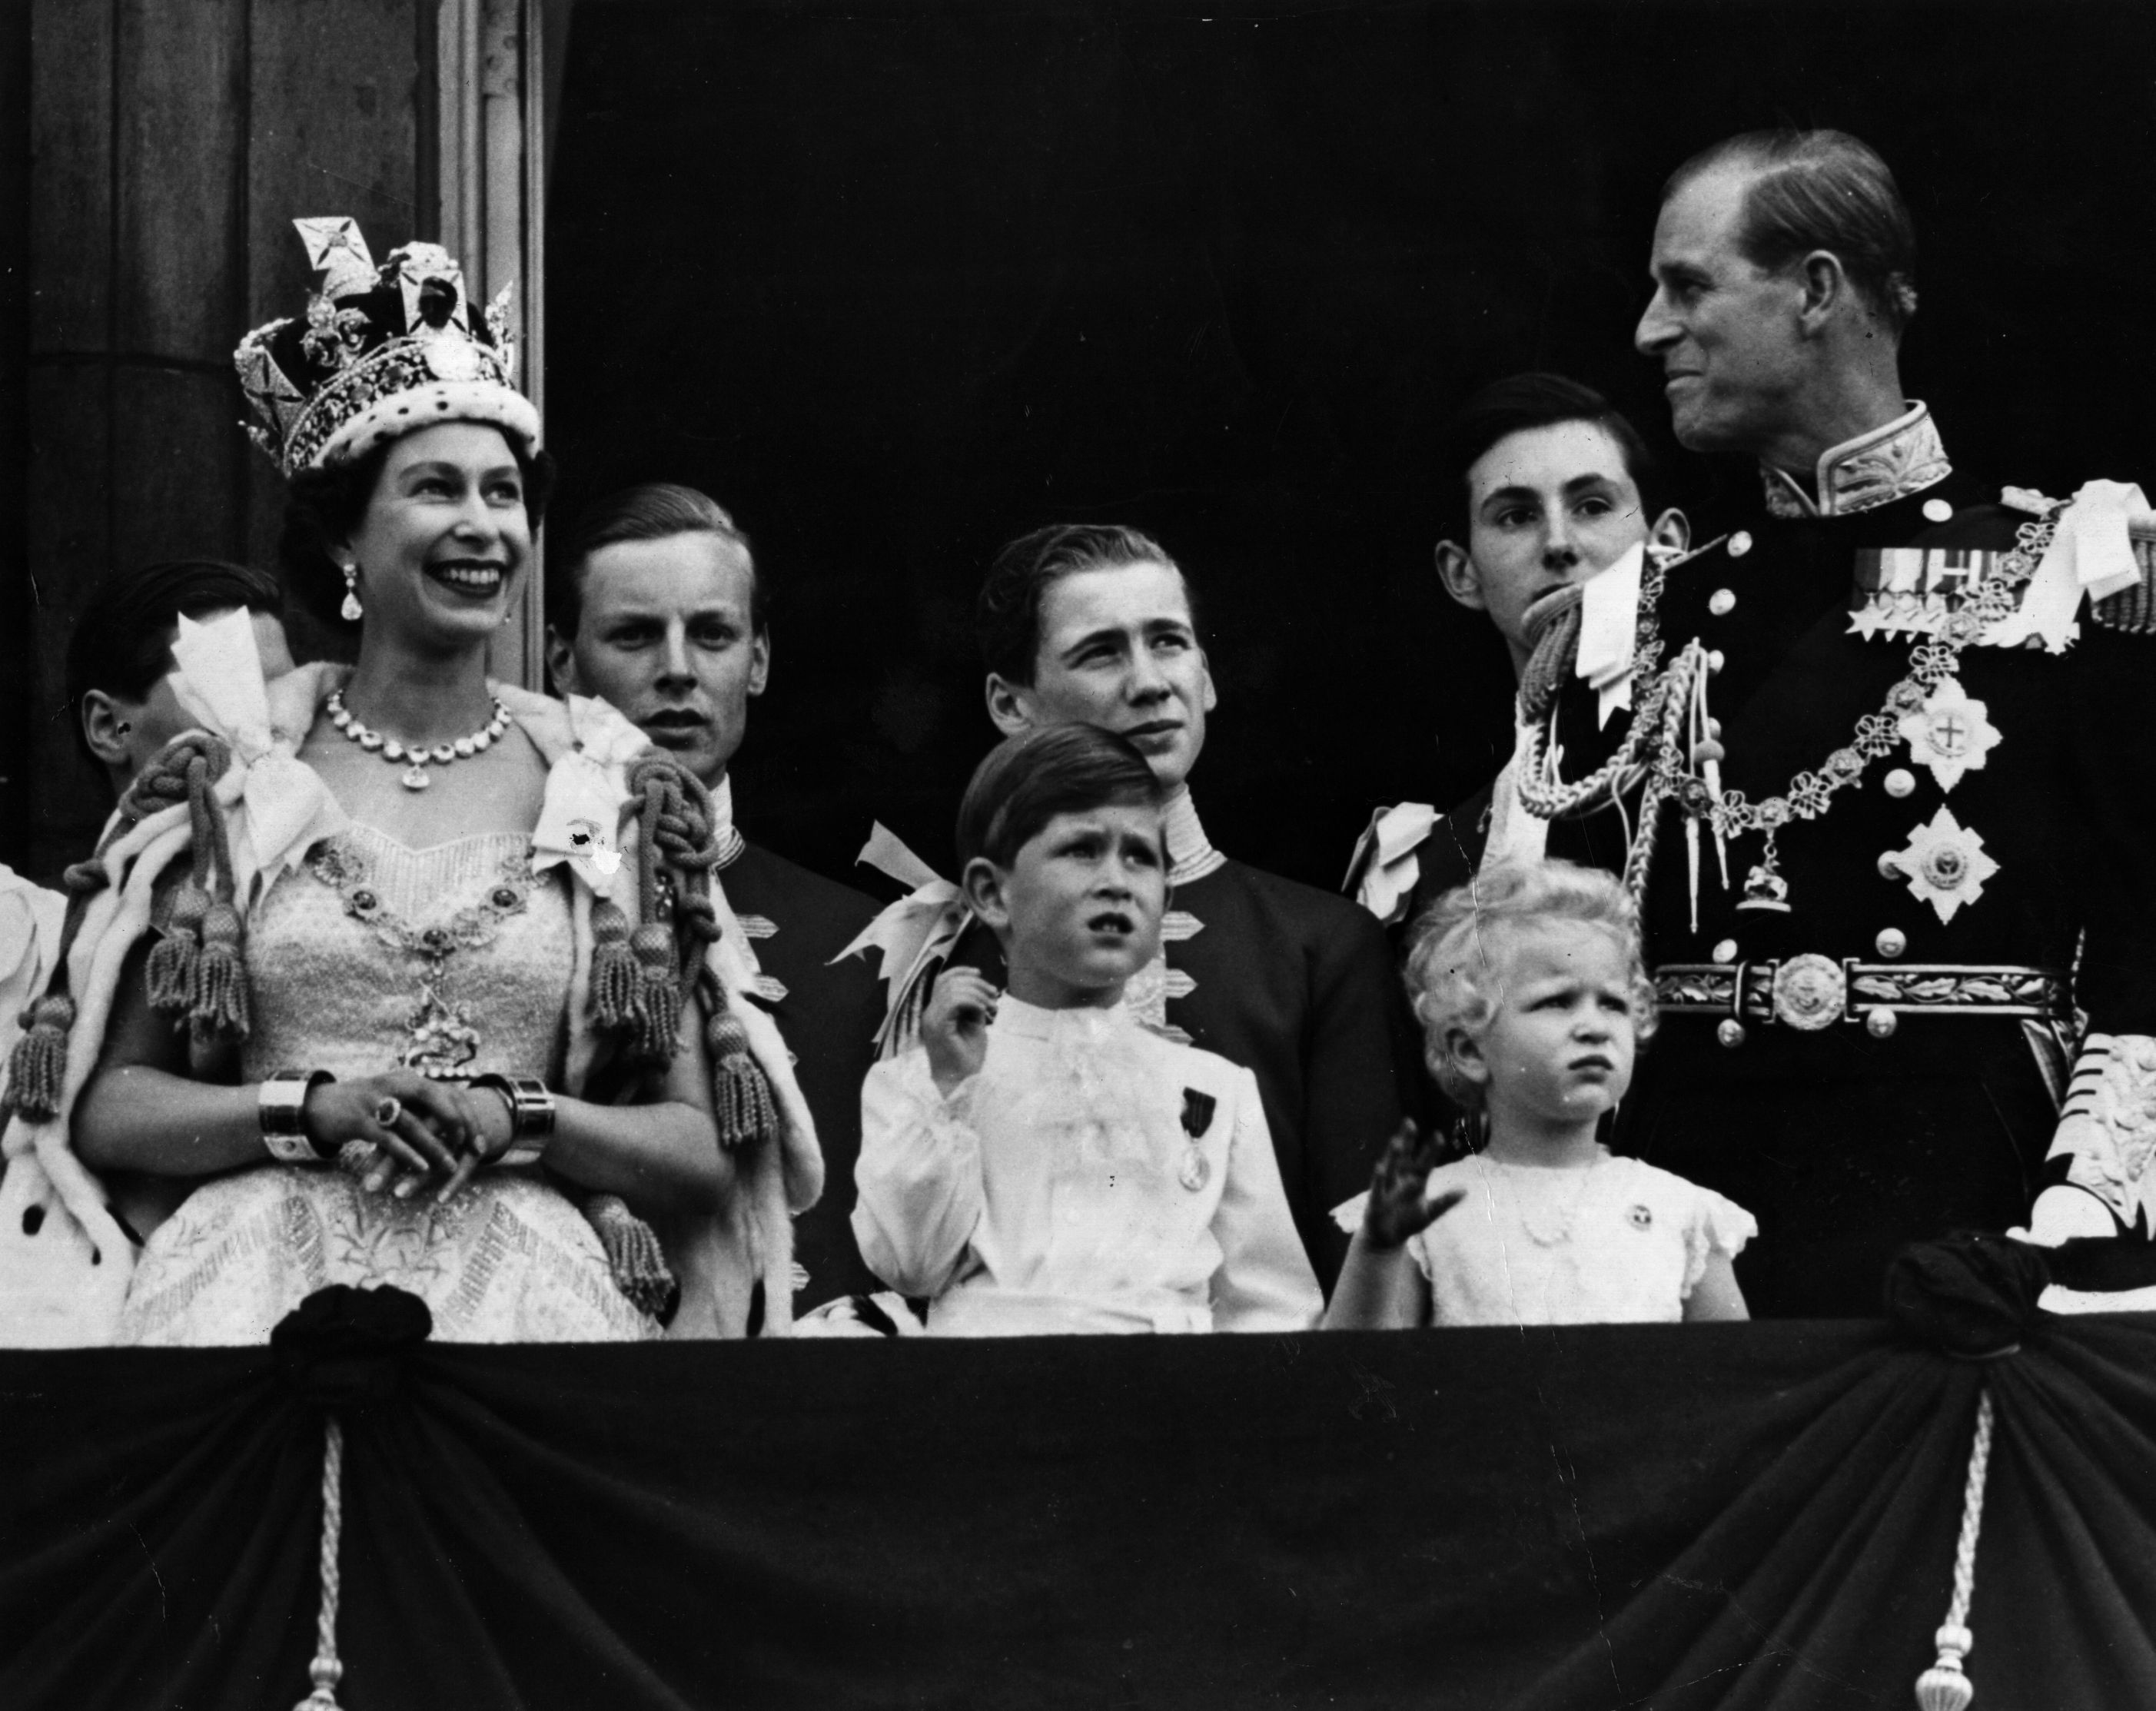 Queen Elizabeth coronation